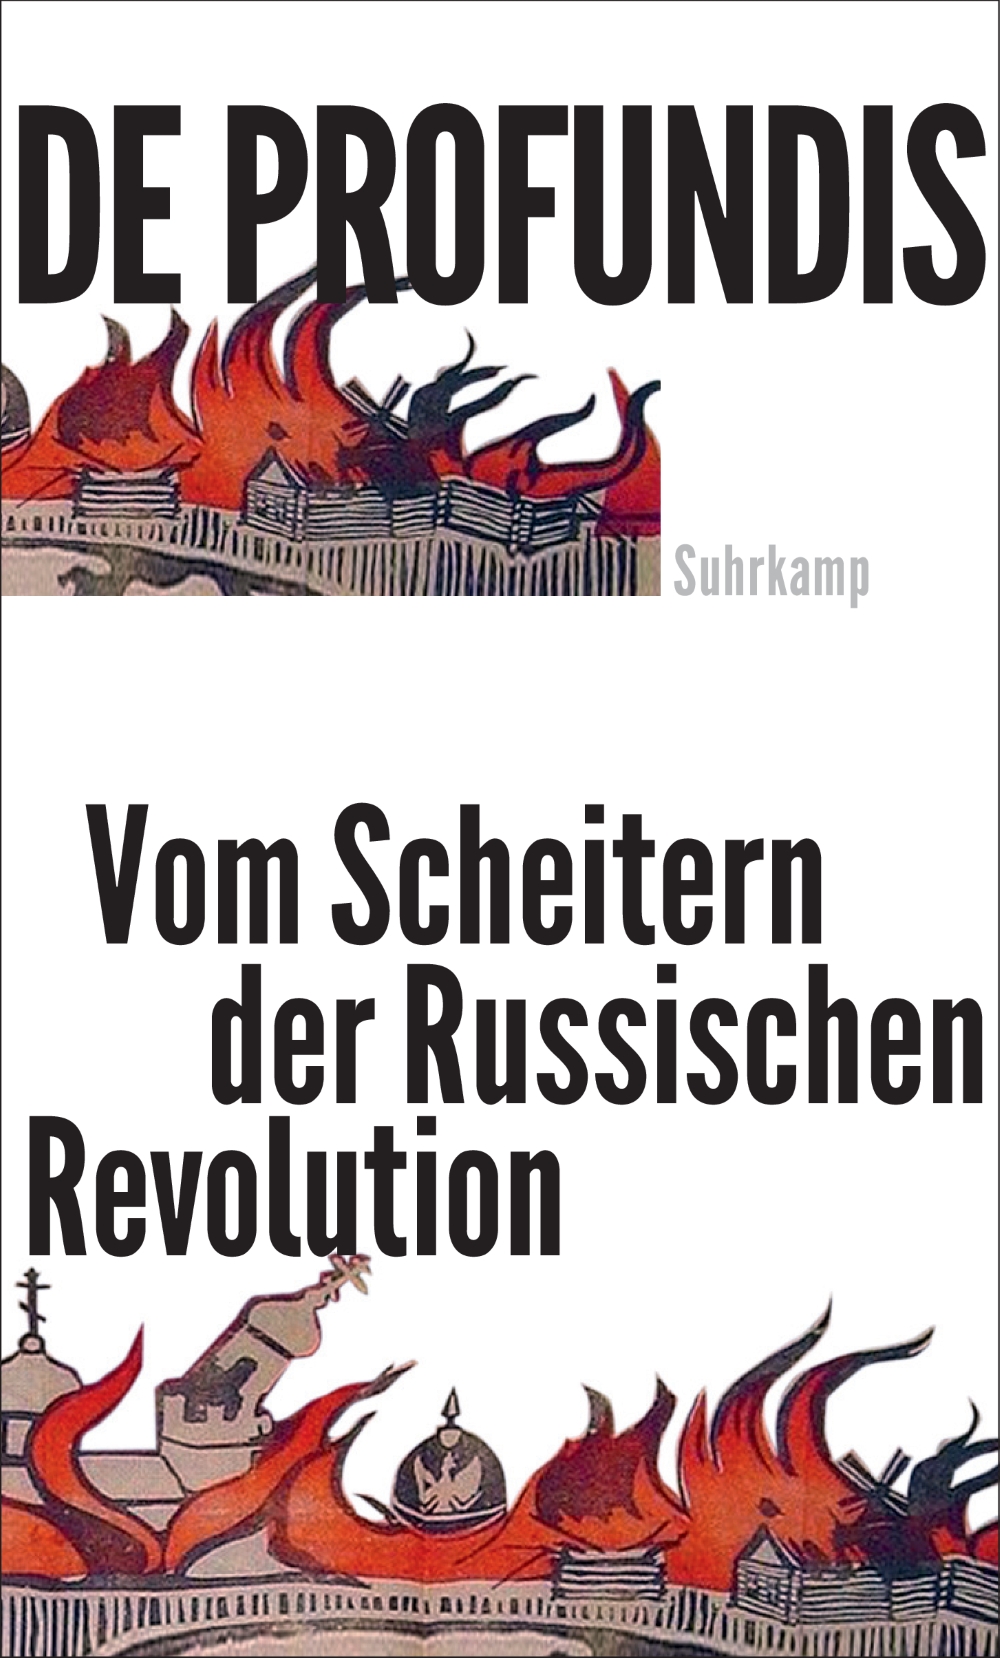 Cover des Buches "De profundis. Vom Scheitern der Russischen Revolution", Verlag Suhrkamp